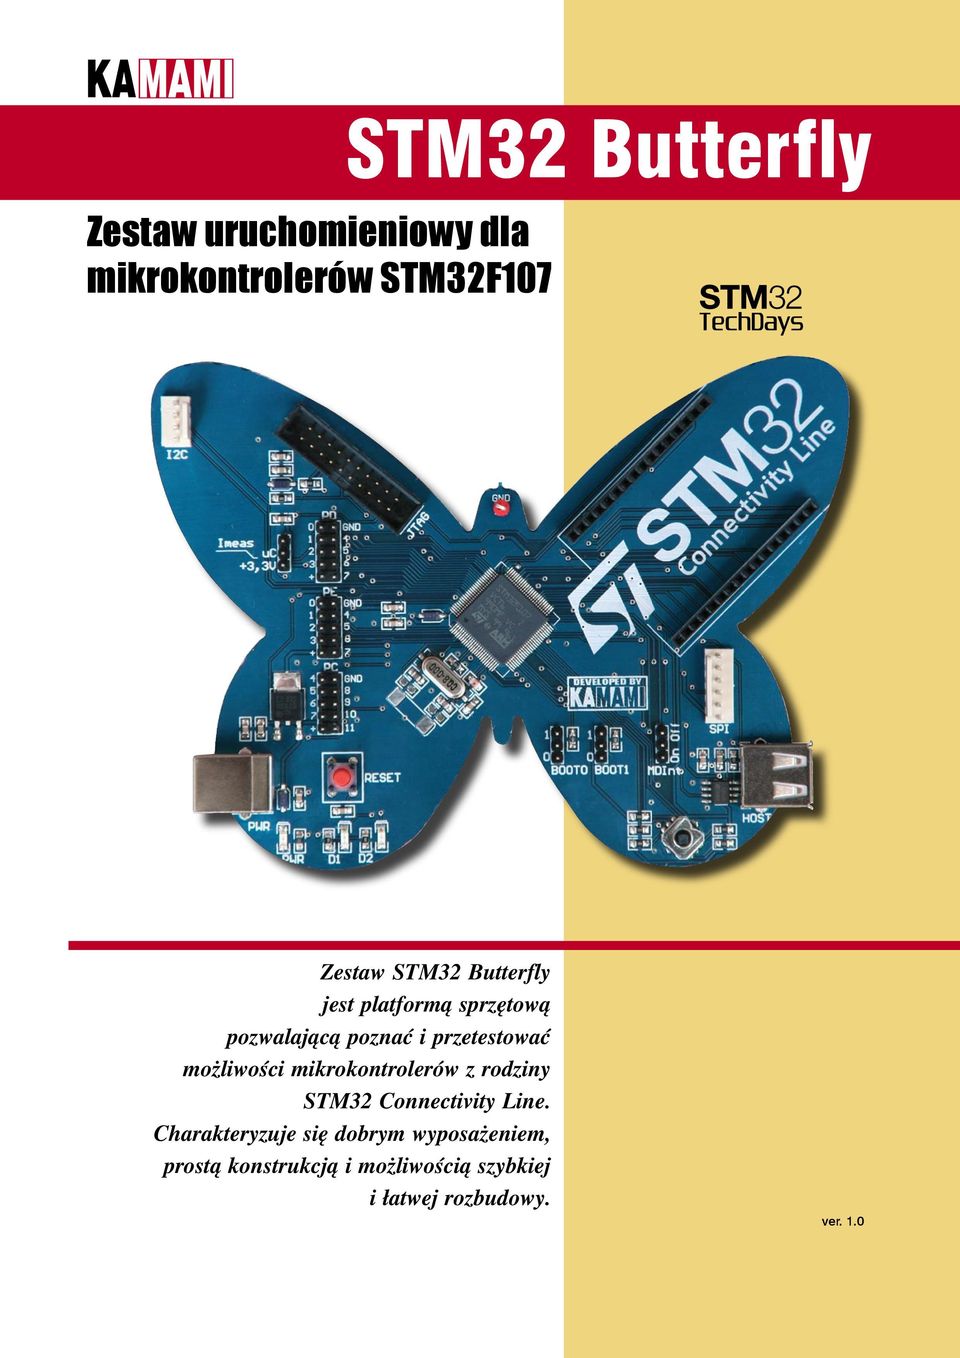 możliwości mikrokontrolerów z rodziny STM32 Connectivity Line.